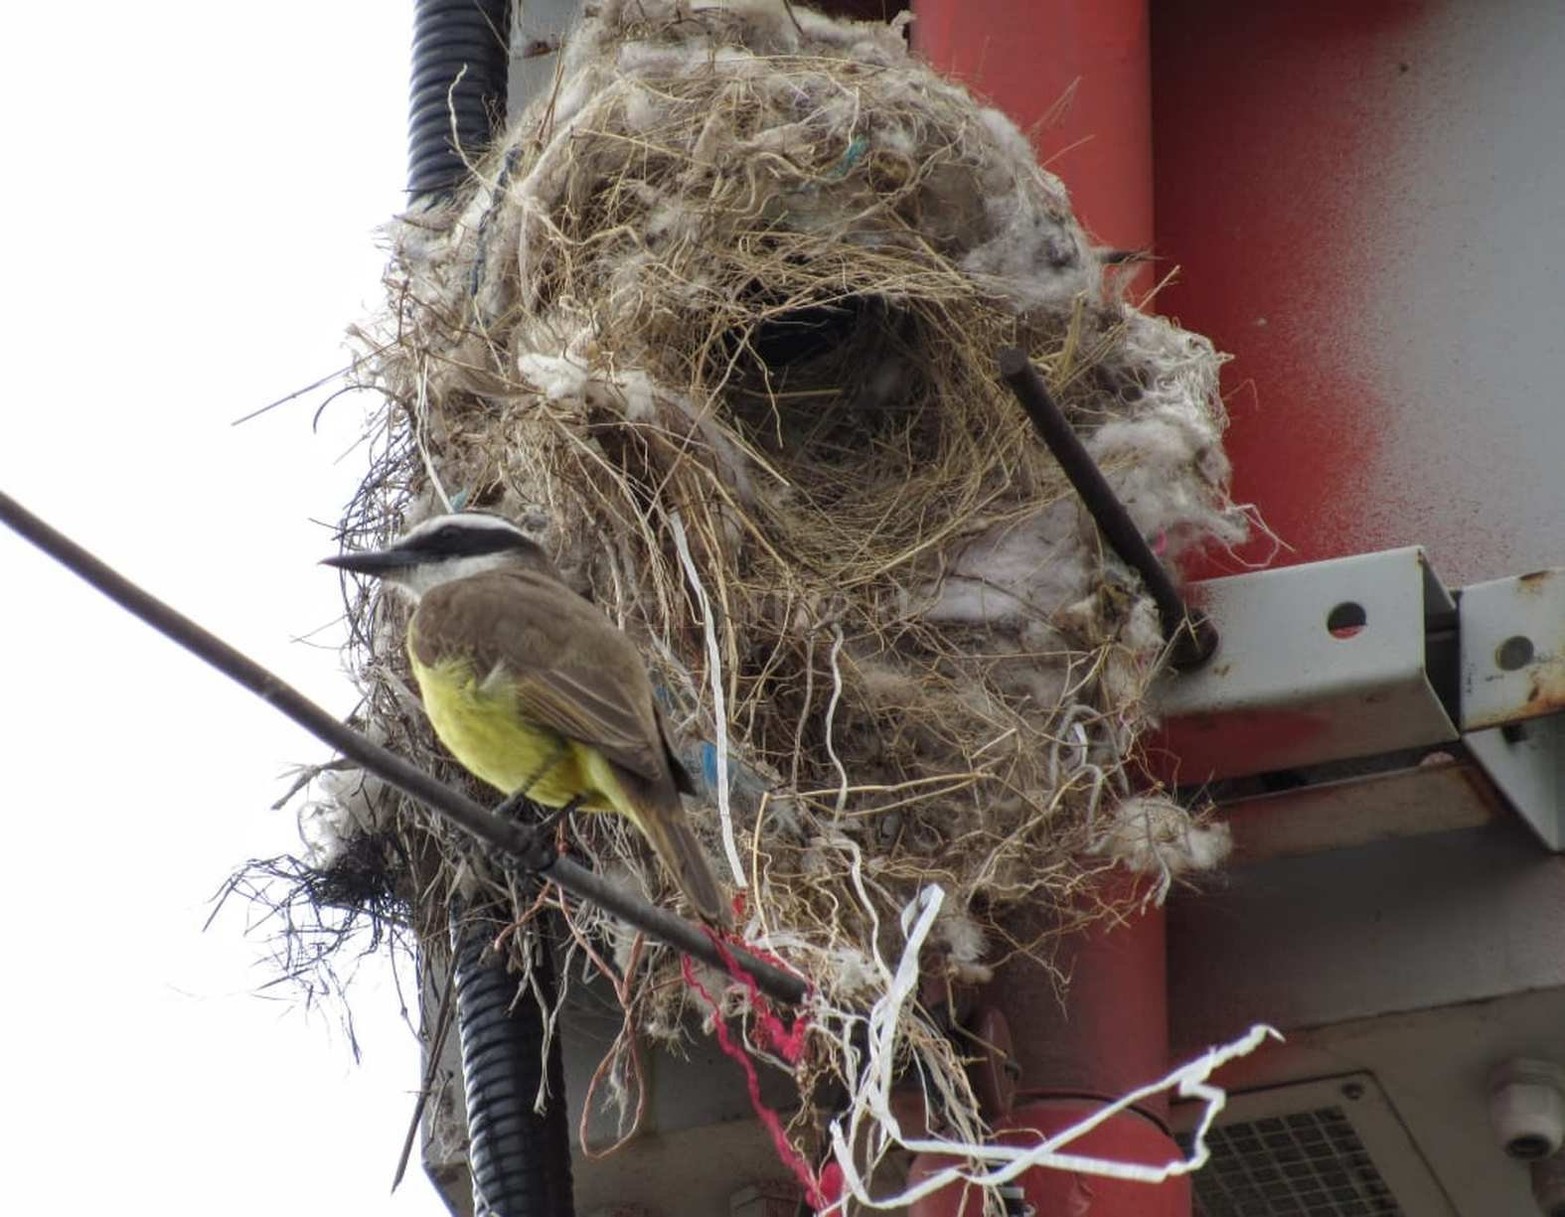 Hilos de plástico y guata sintética utilizados como material de nidificación por benteveo (Pitangus sulphuratus). El nido se construyó sobre una torre de comunicación.